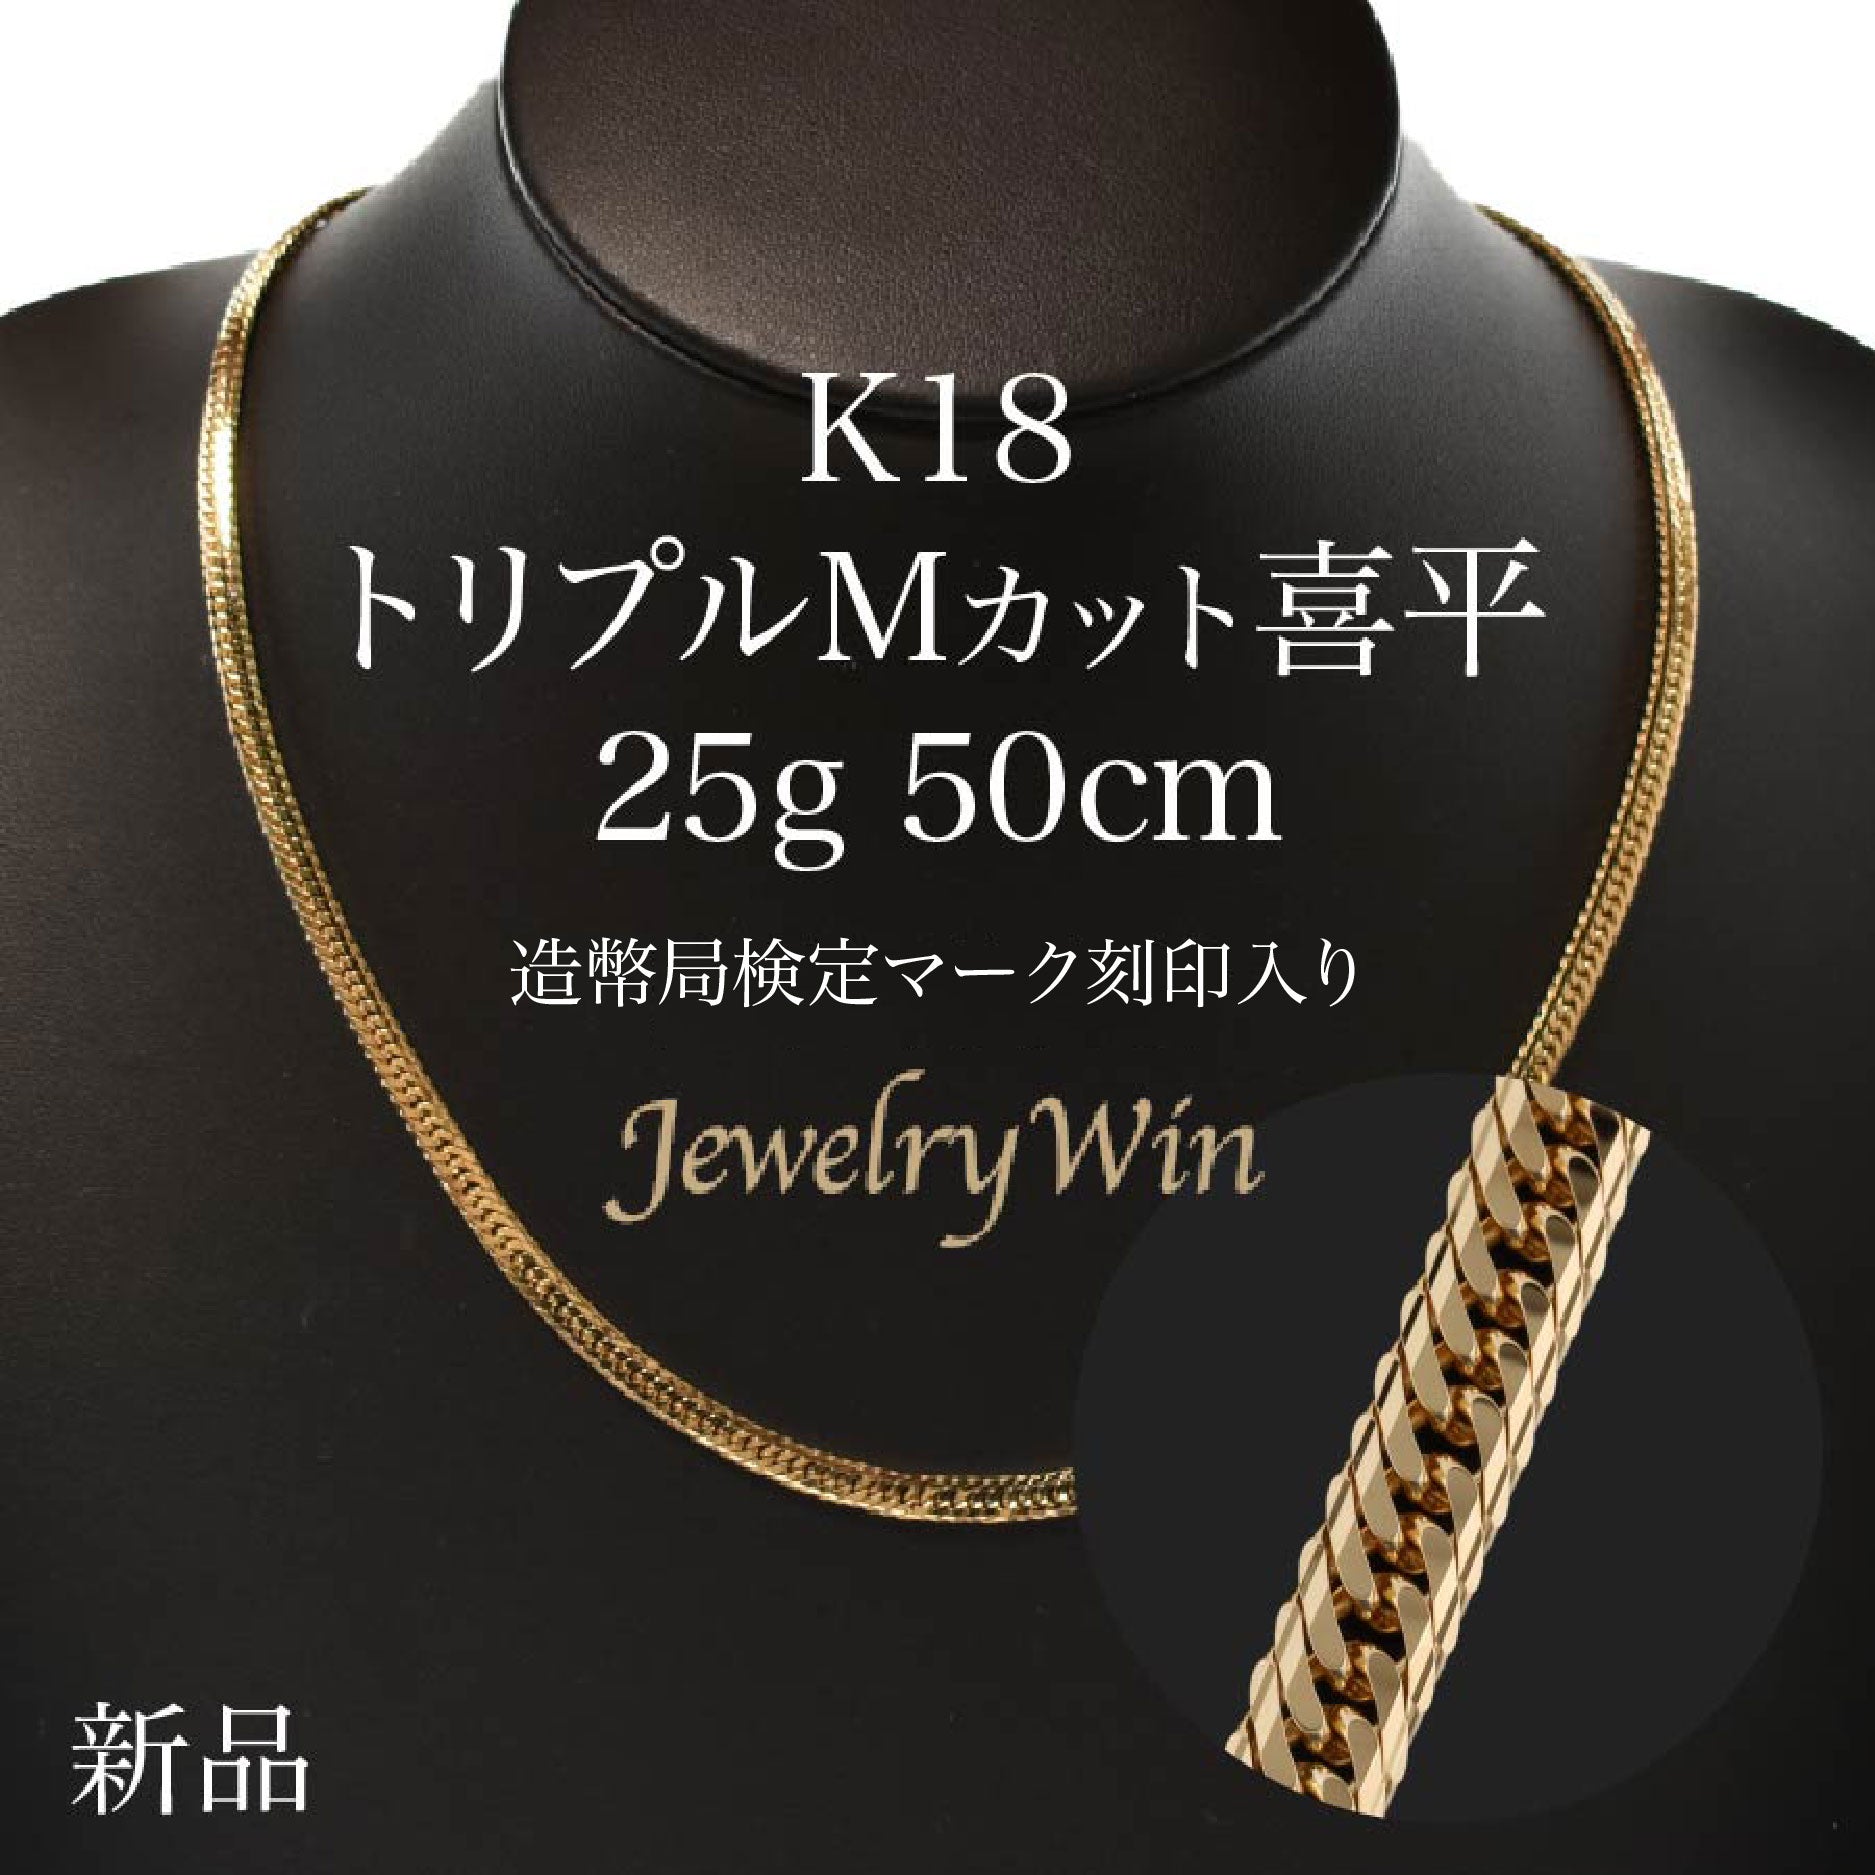 【新品】ネックレス 喜平 キヘイ K18 約25g 12DCT 50cmゴールドモデル